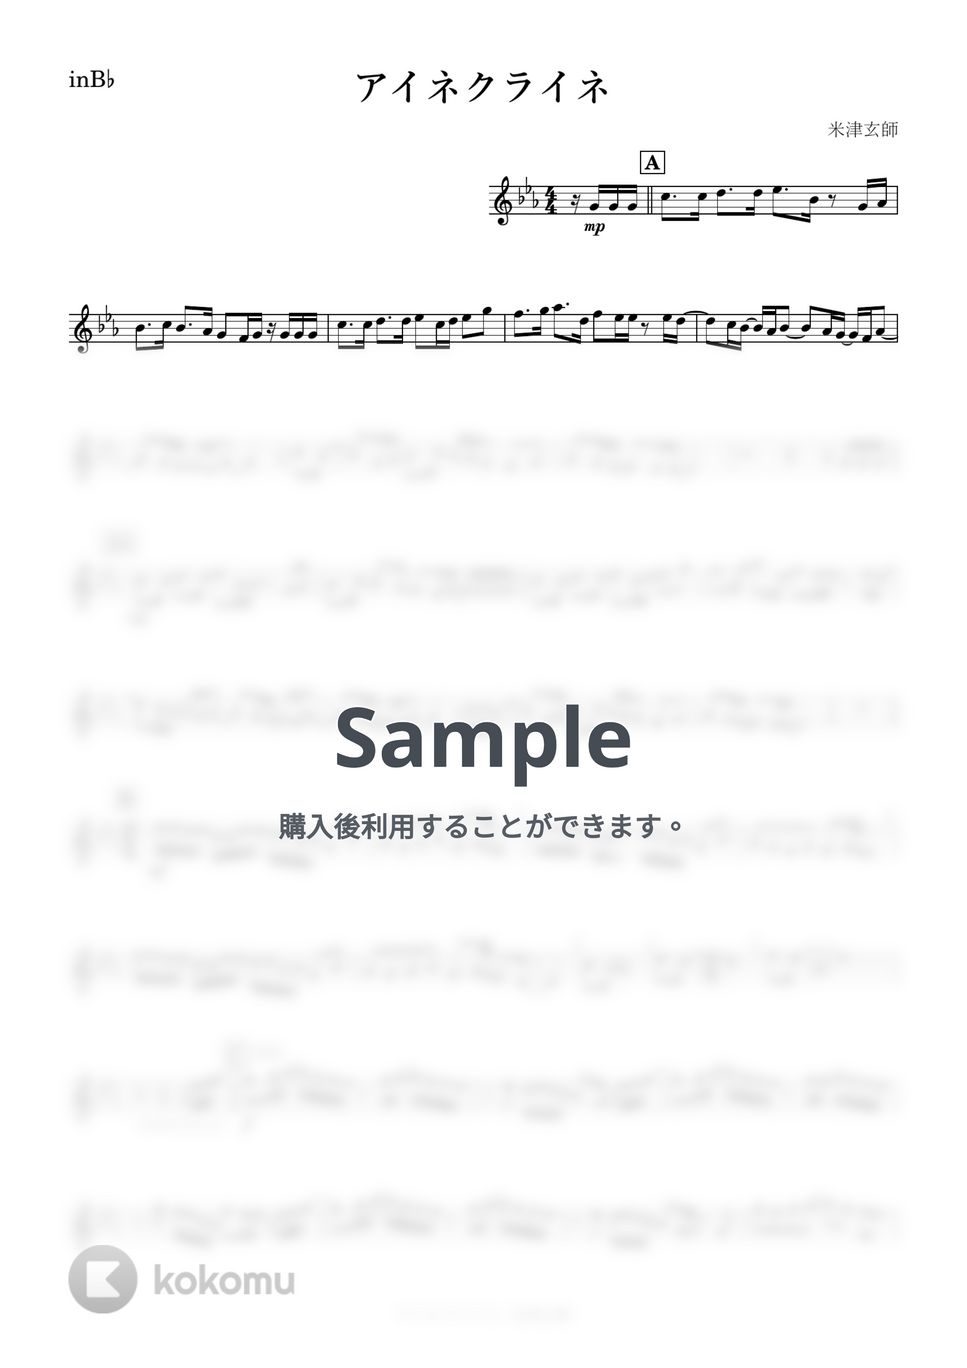 米津玄師 - アイネクライネ (B♭) by kanamusic